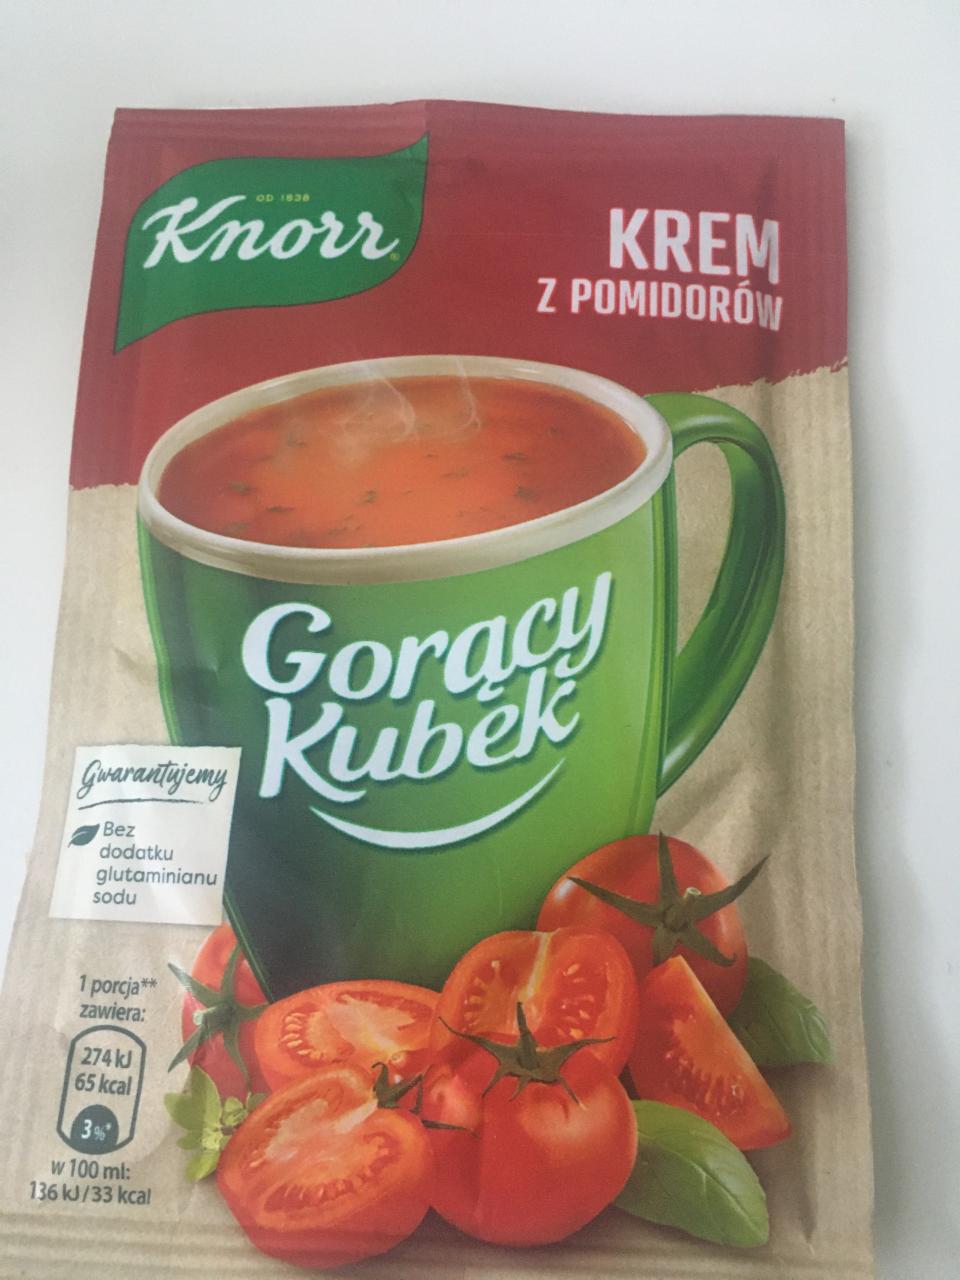 Fotografie - Gorący kubek krem z pomidorów Knorr